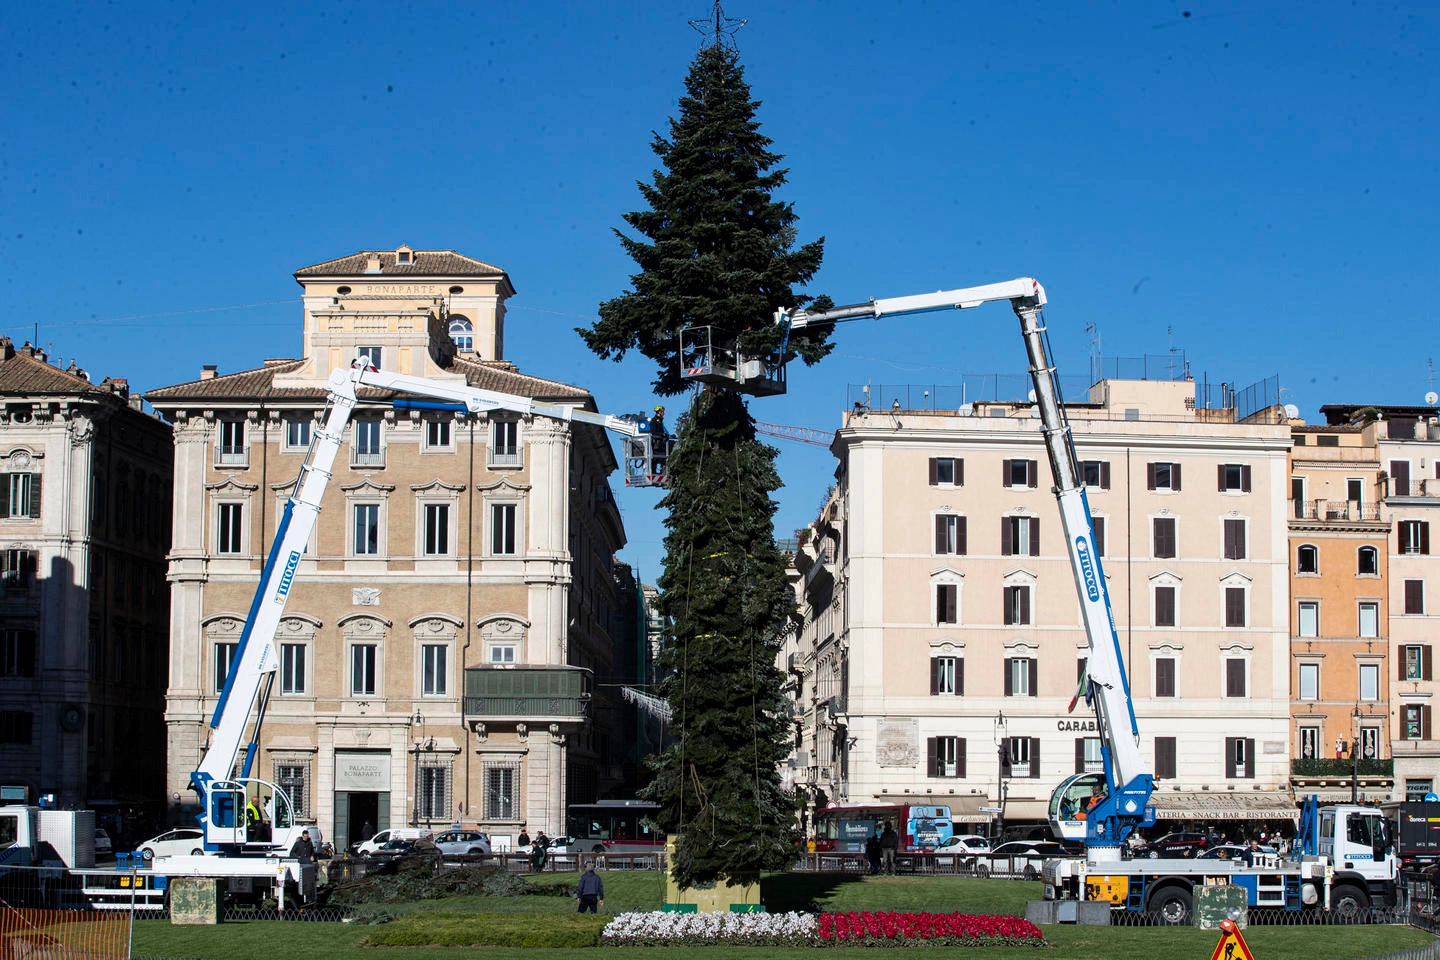 Albero di Natale 2021 in piazza Venezia a Roma